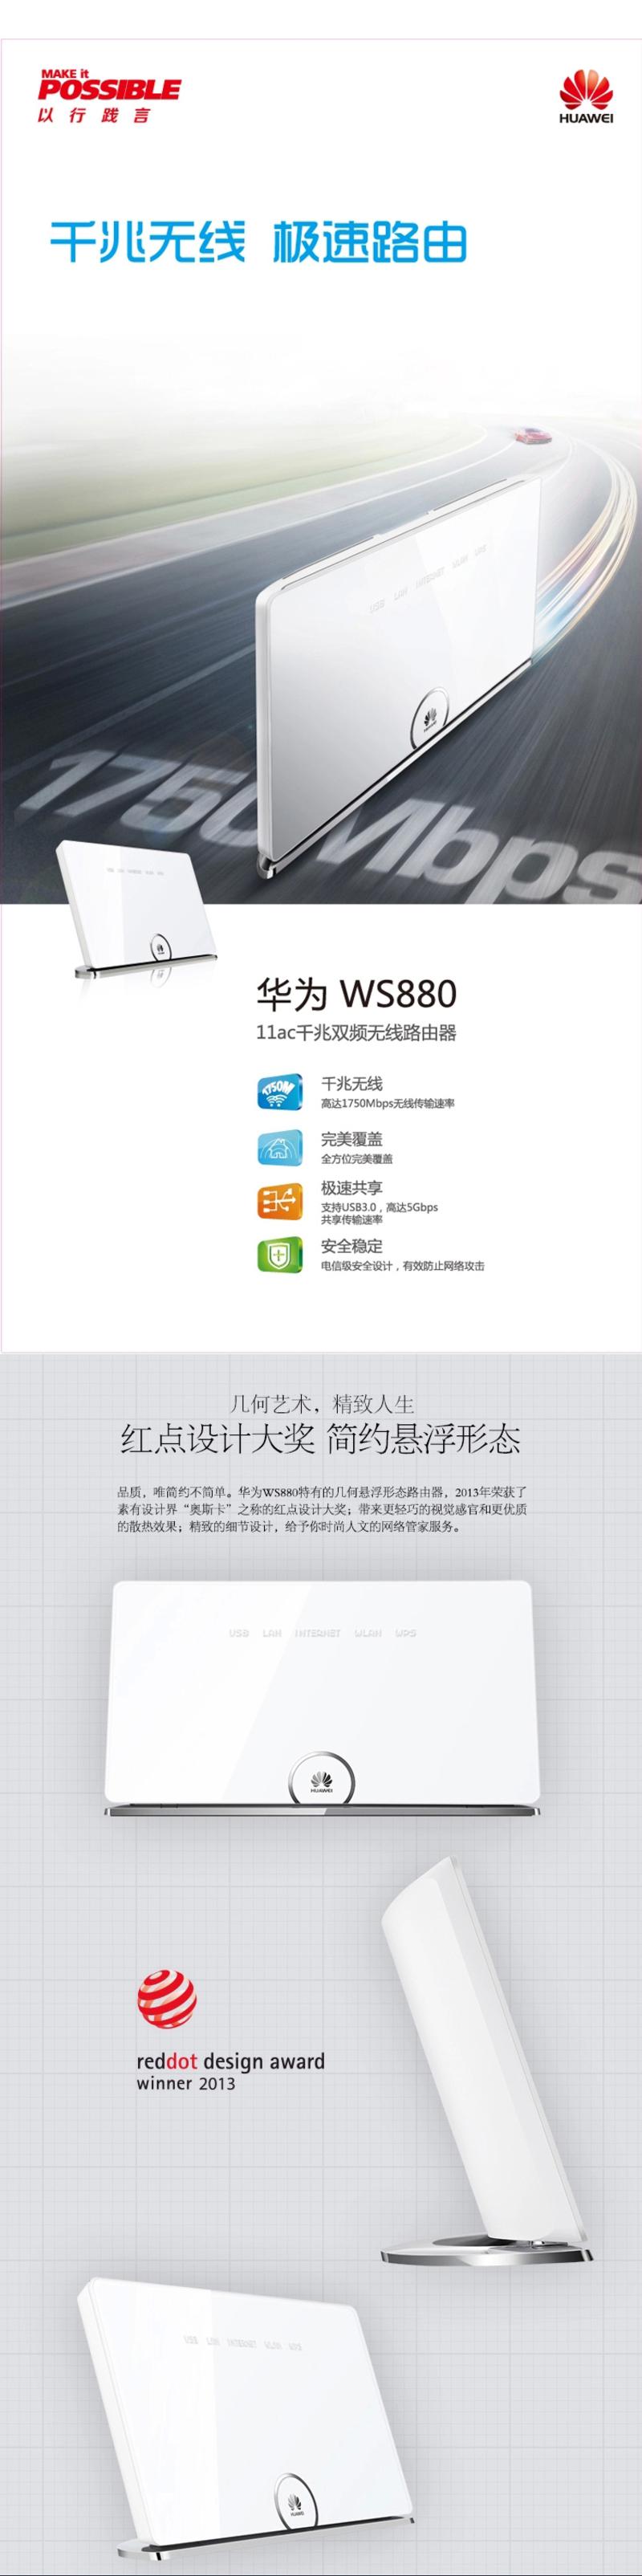 华为WS880 双频 11ac千兆无线路由器 6天线 USB3.0高速传输